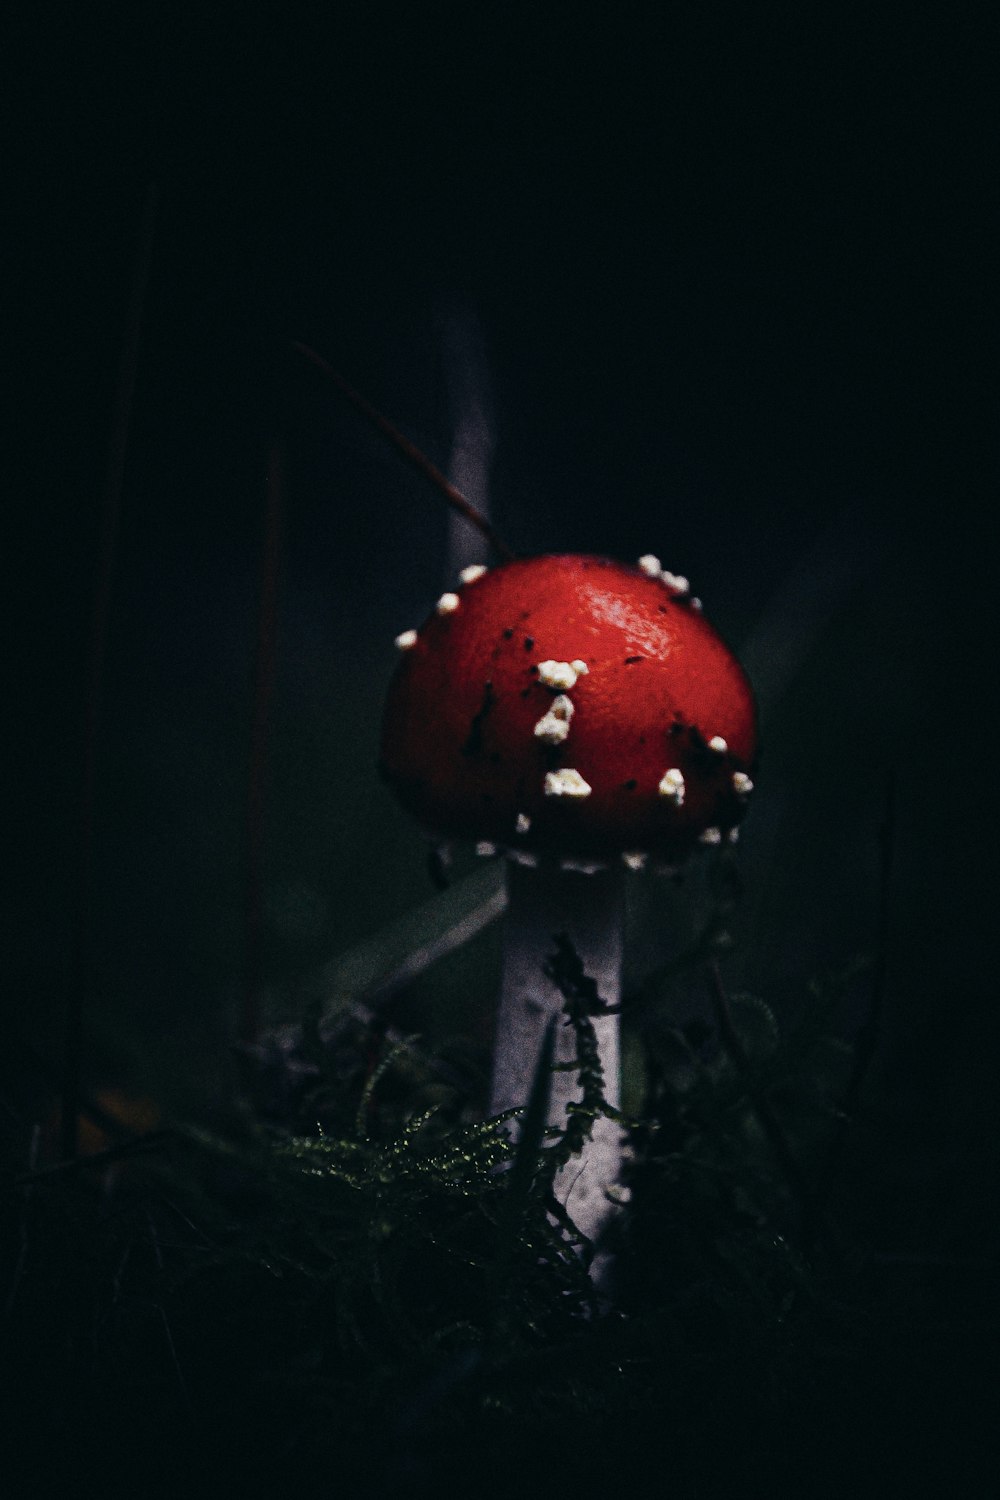 cogumelo vermelho e branco na fotografia de perto